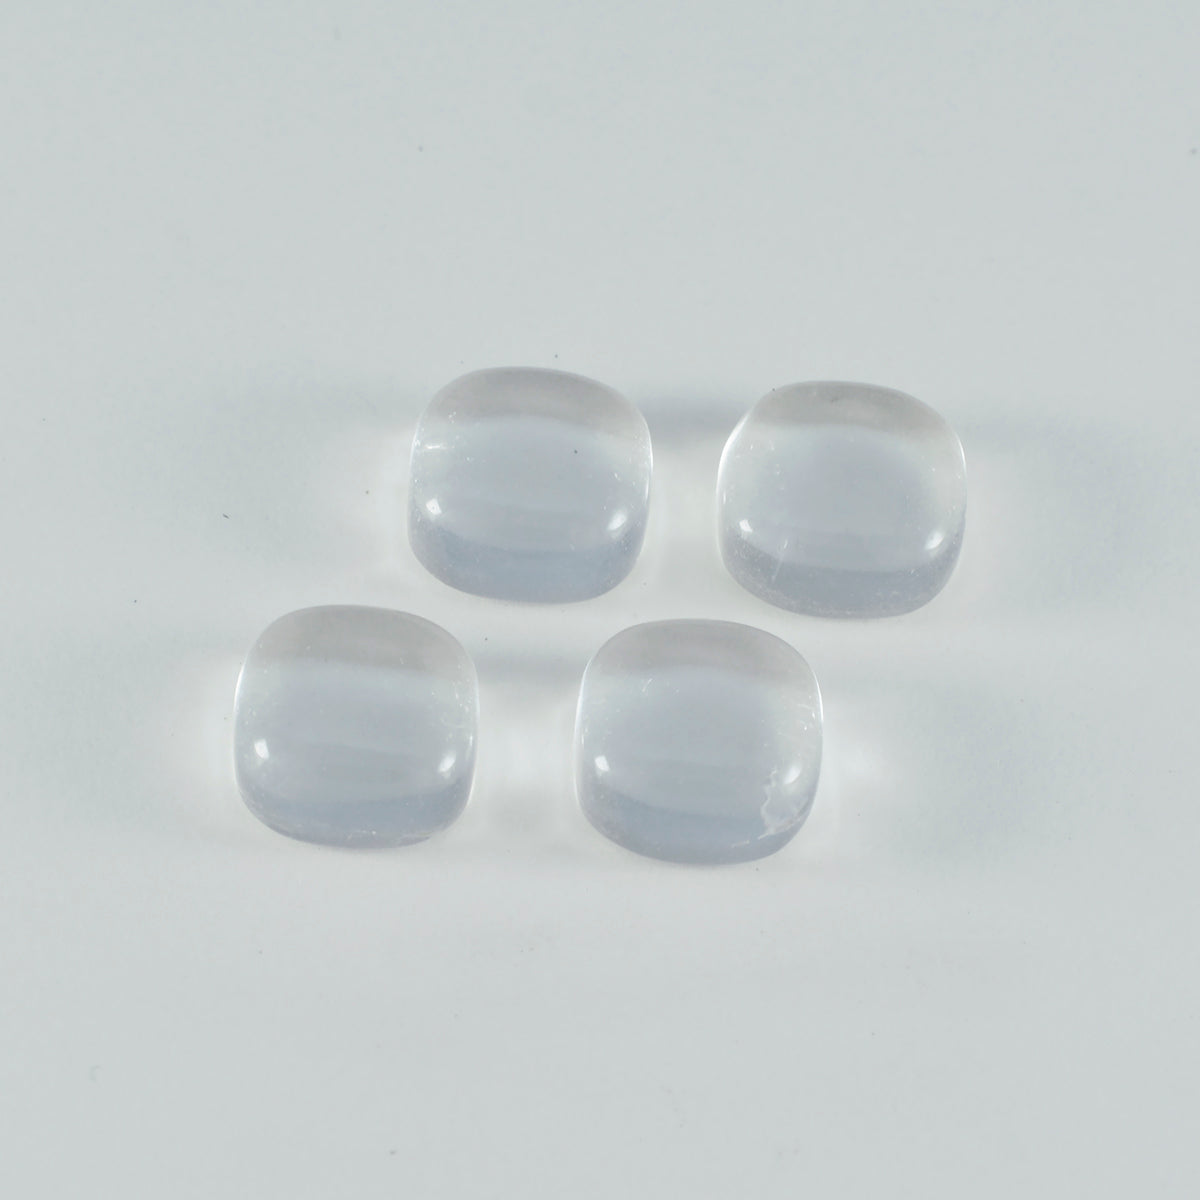 riyogems 1pc cabochon di quarzo di cristallo bianco 7x7 mm a forma di cuscino, gemma sciolta di ottima qualità